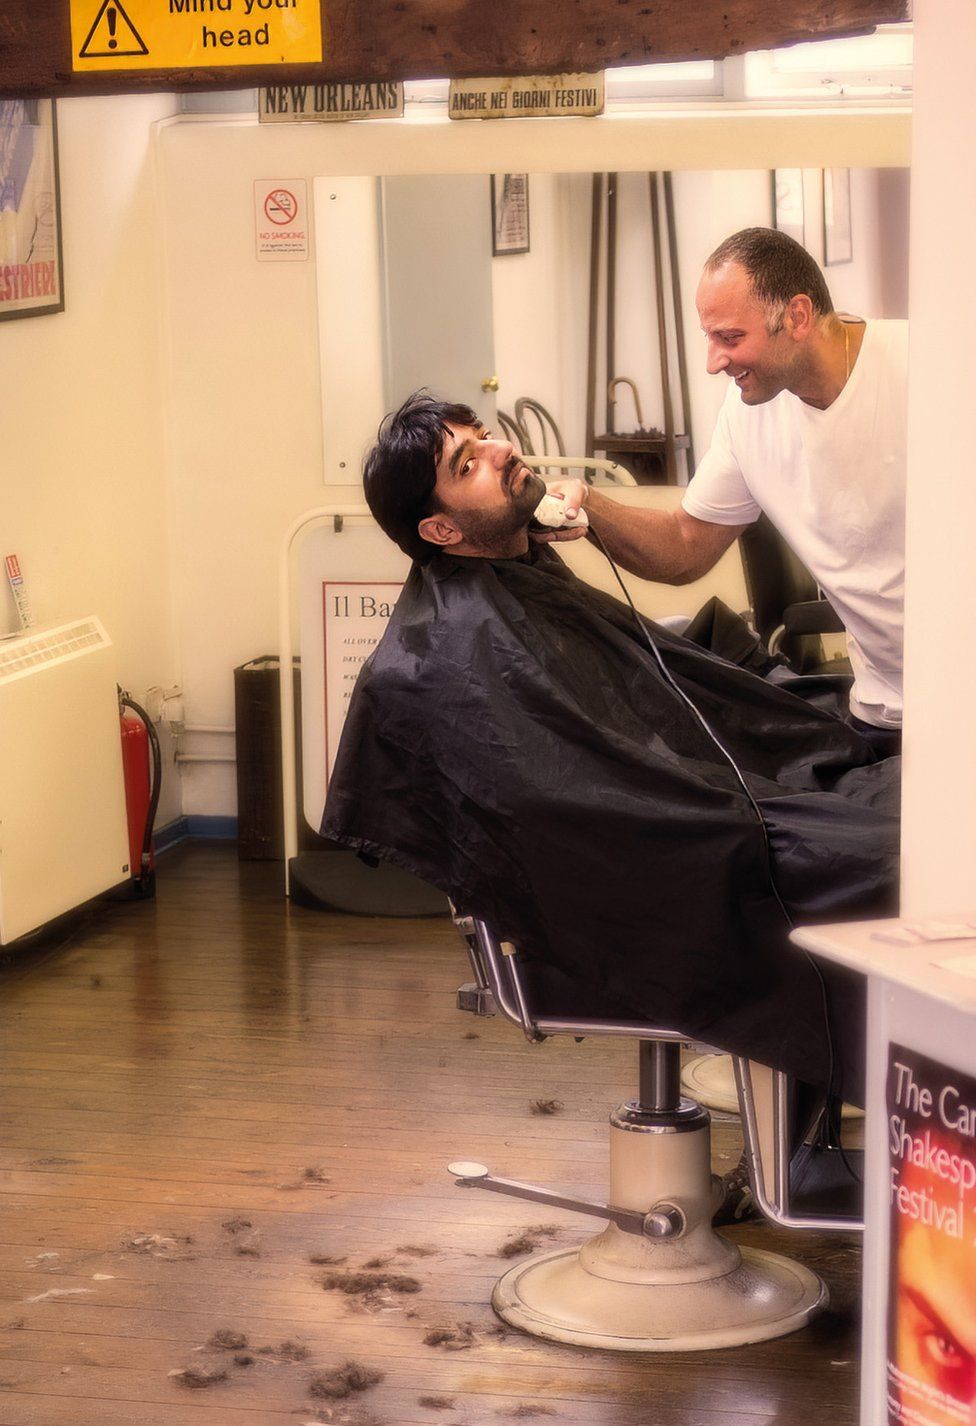 A person getting a haircut